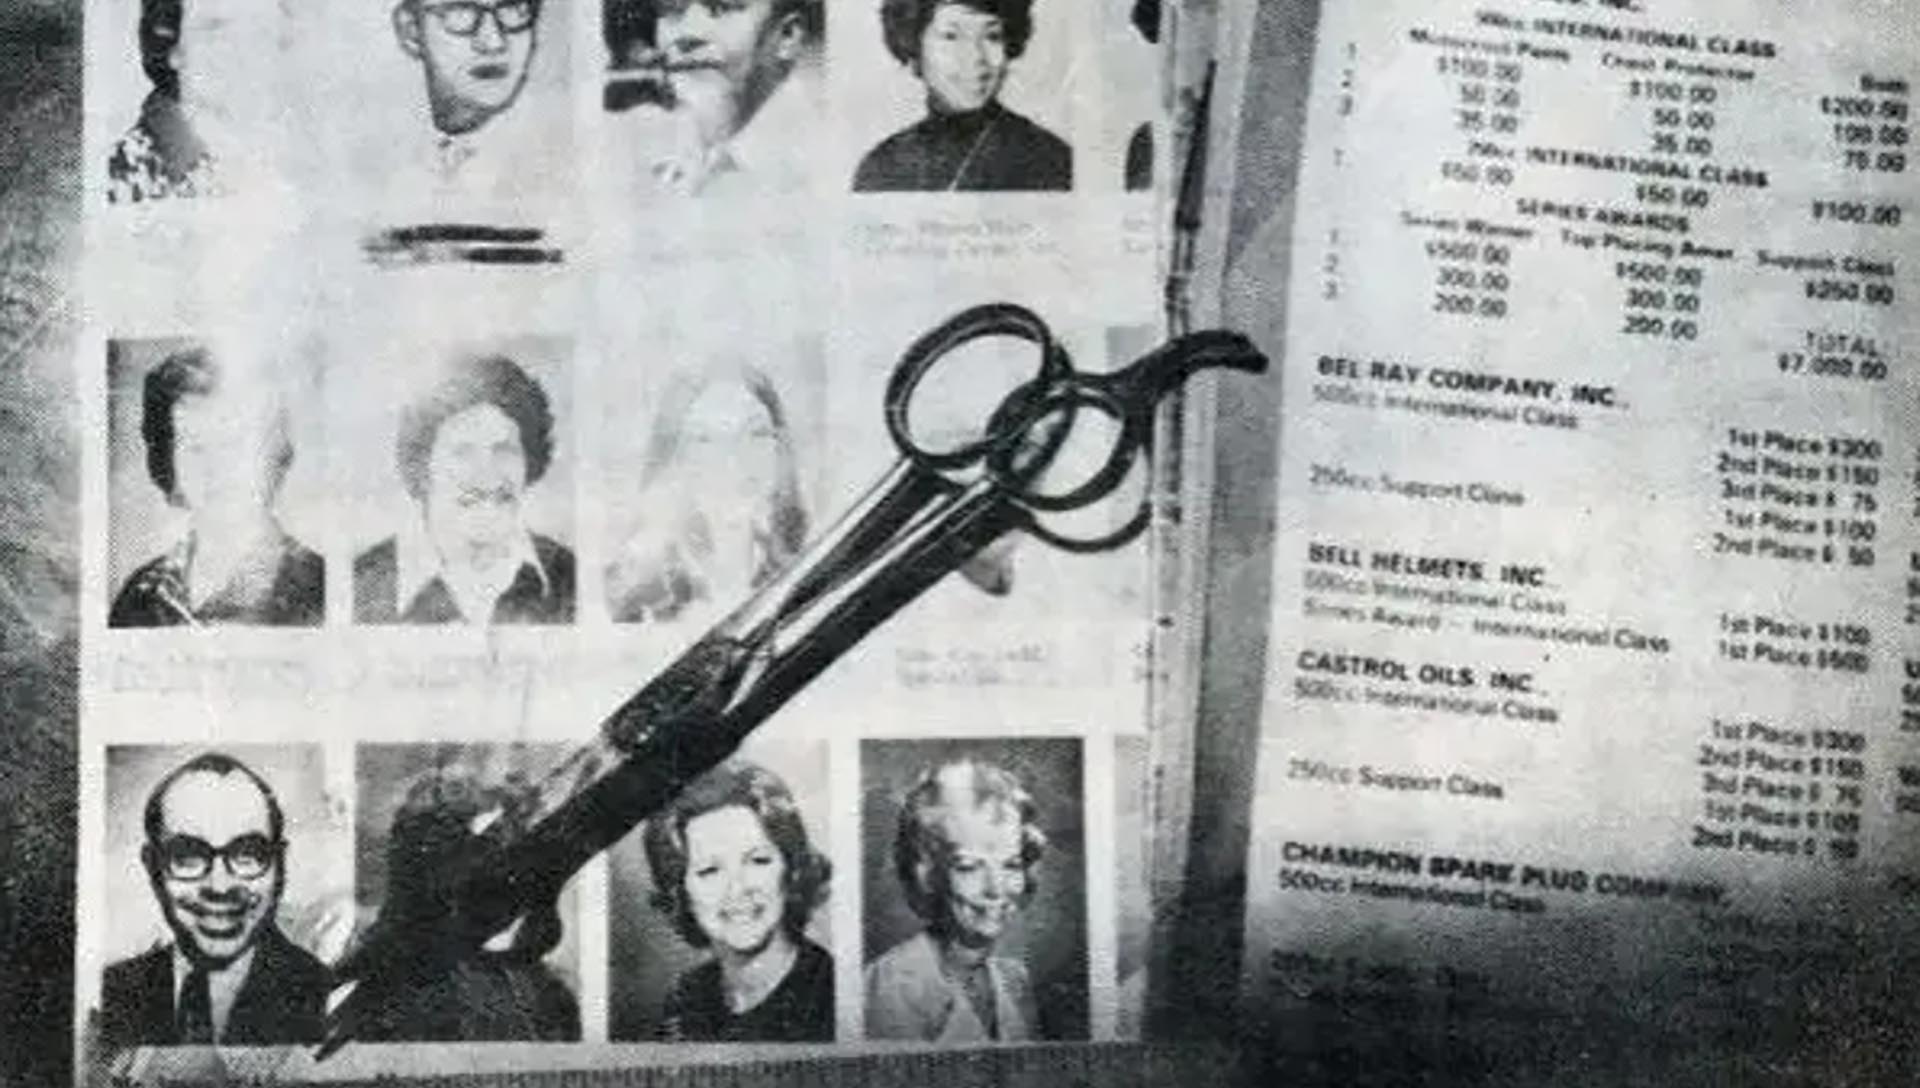 Con esta tijera, los asesinos le hicieron 87 cortes en el cuerpo a Michael Columbo